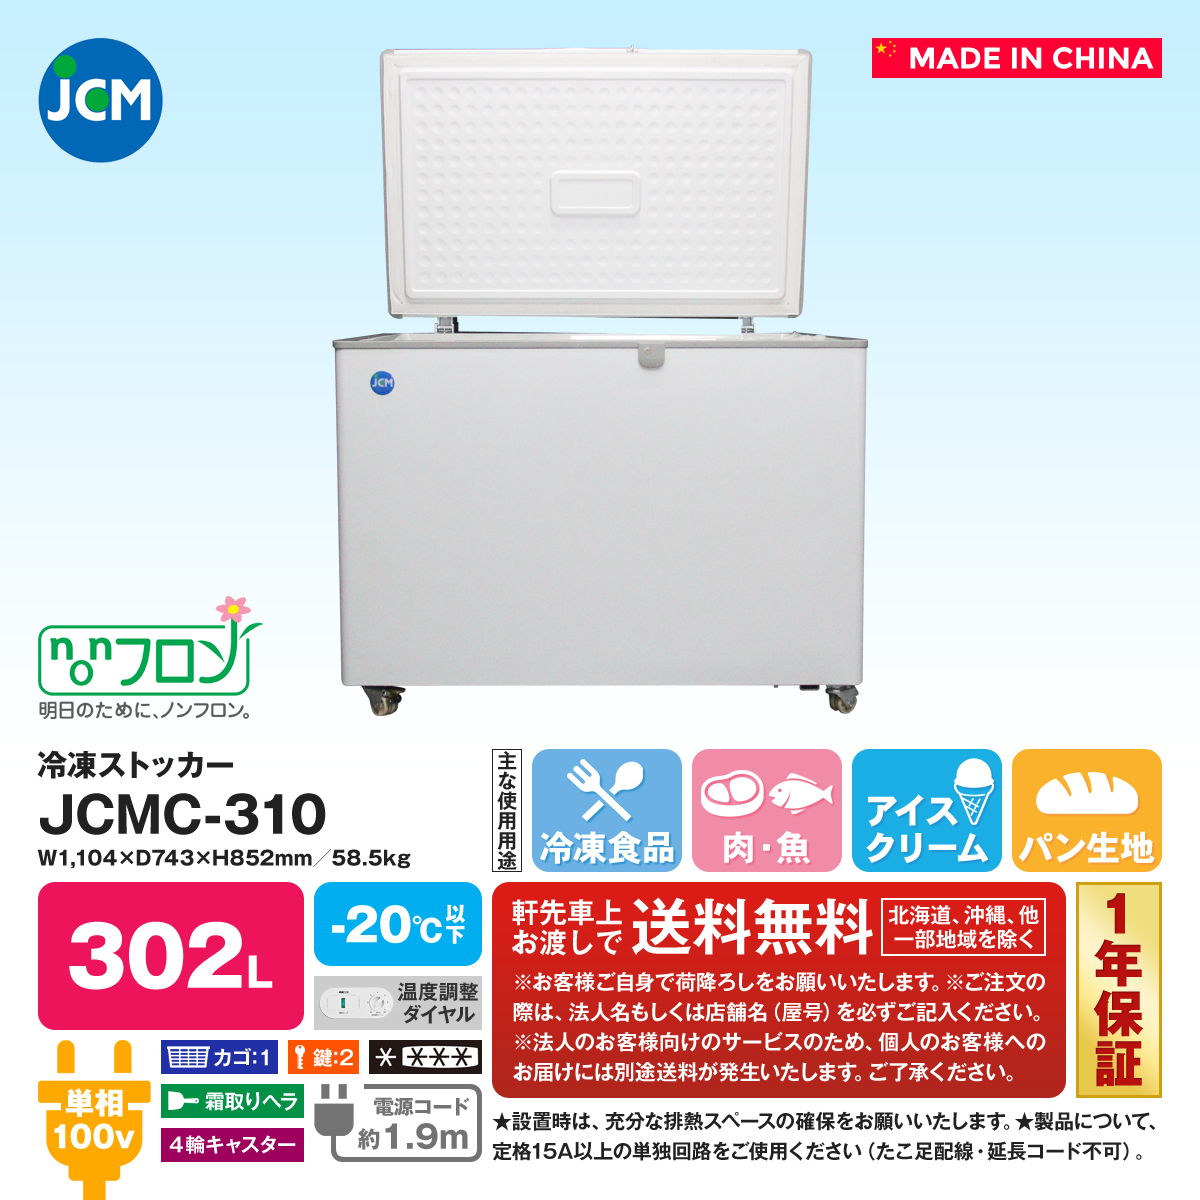 人気定番の 清風堂東京本店冷凍ストッカー JCMC-310